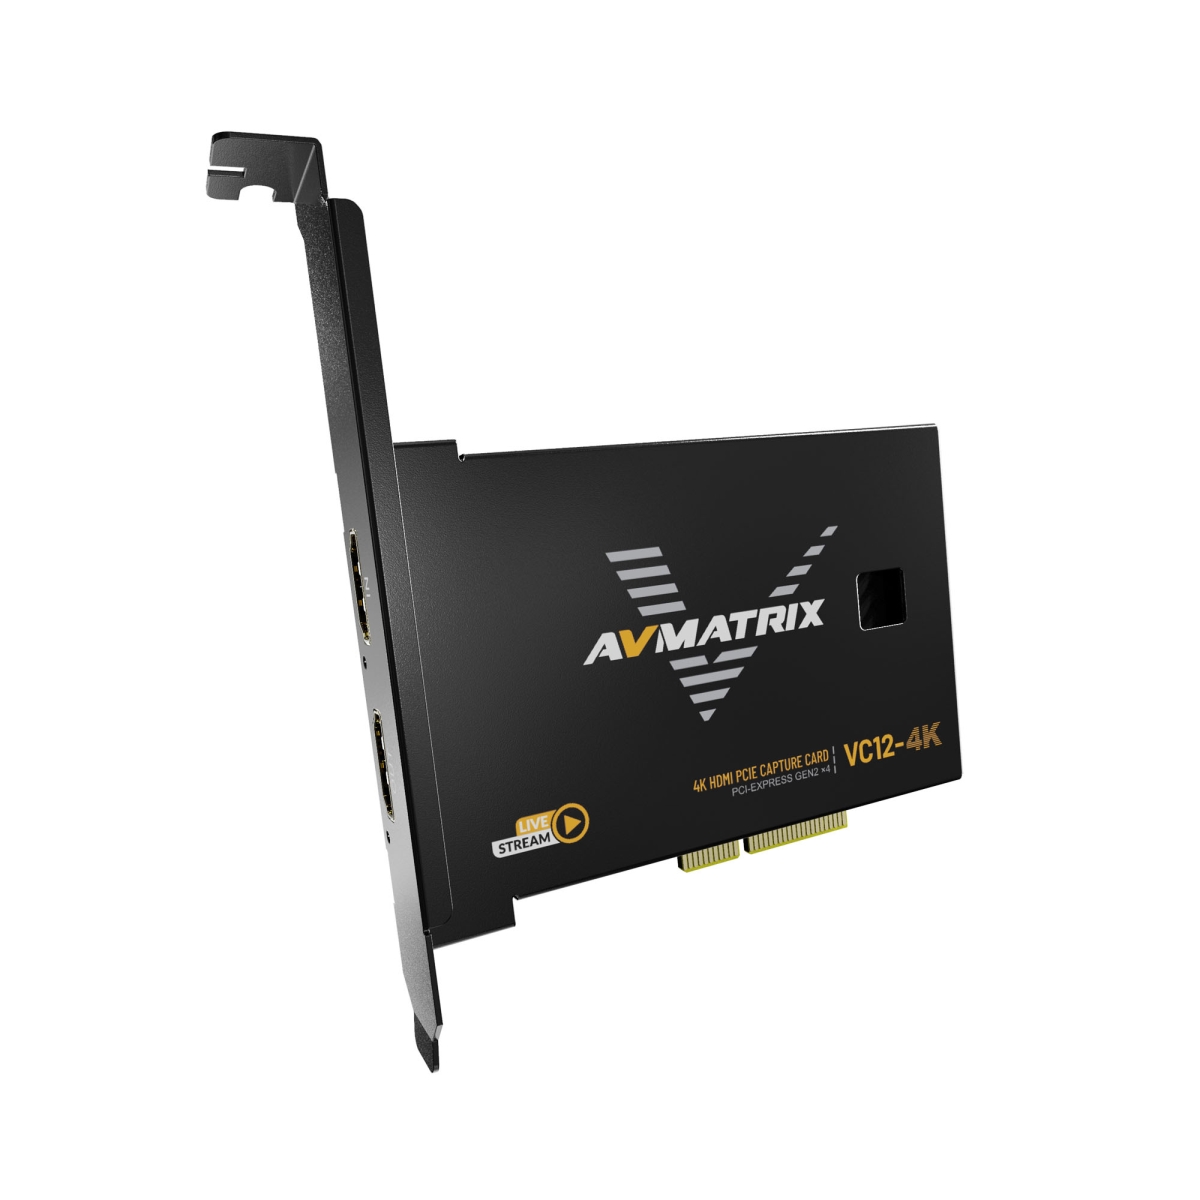 Picture of AVMatrix LIL-VC12-4K Single Channel HDMI 2.0 4k60 PCI-E Capture Card